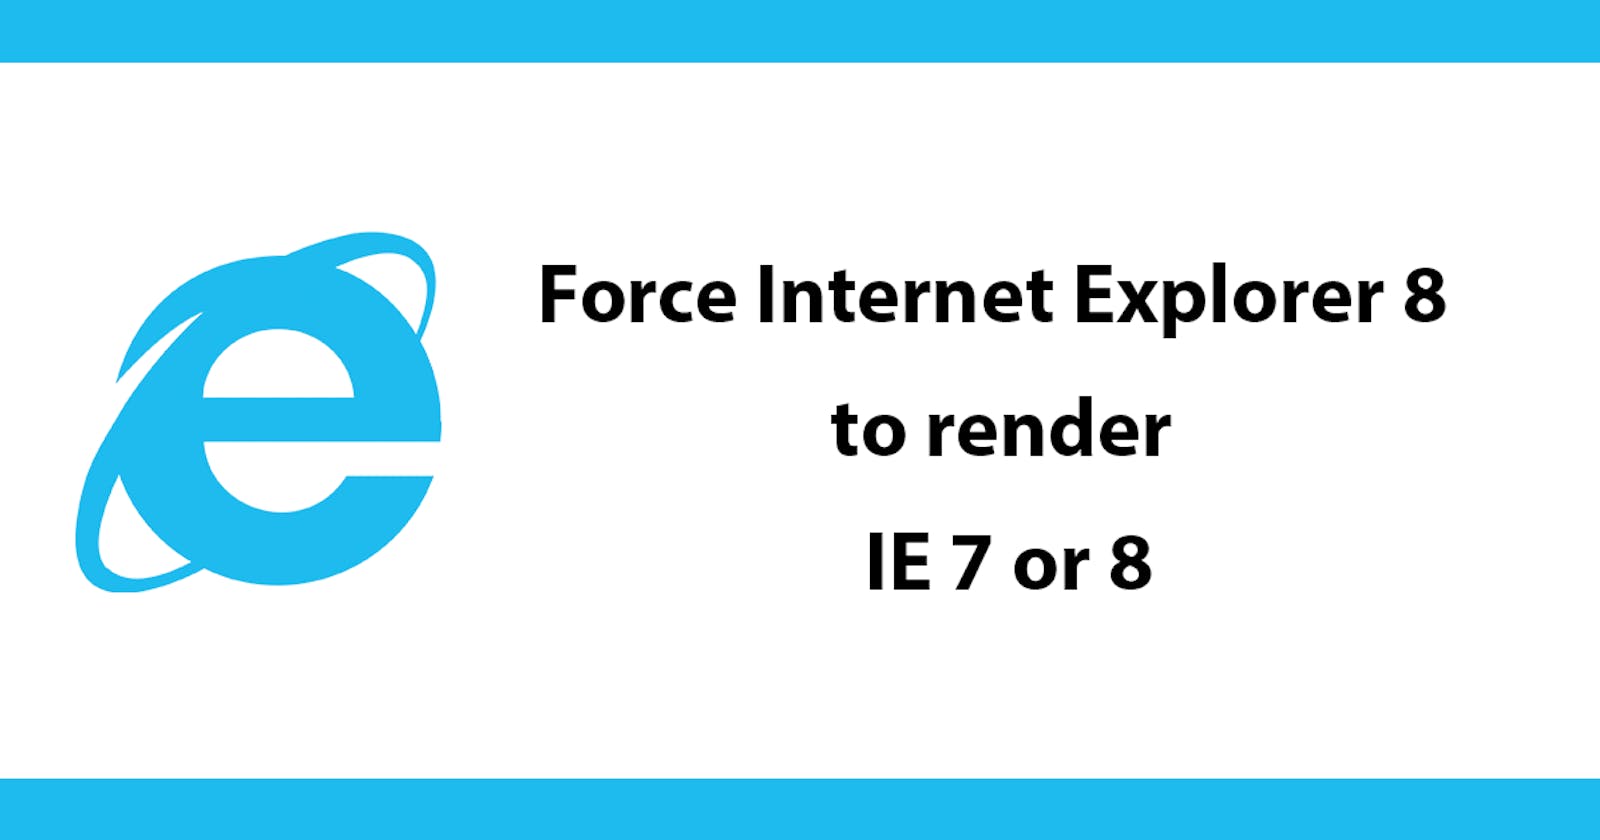 Force Internet Explorer 8 to render IE 7 or 8